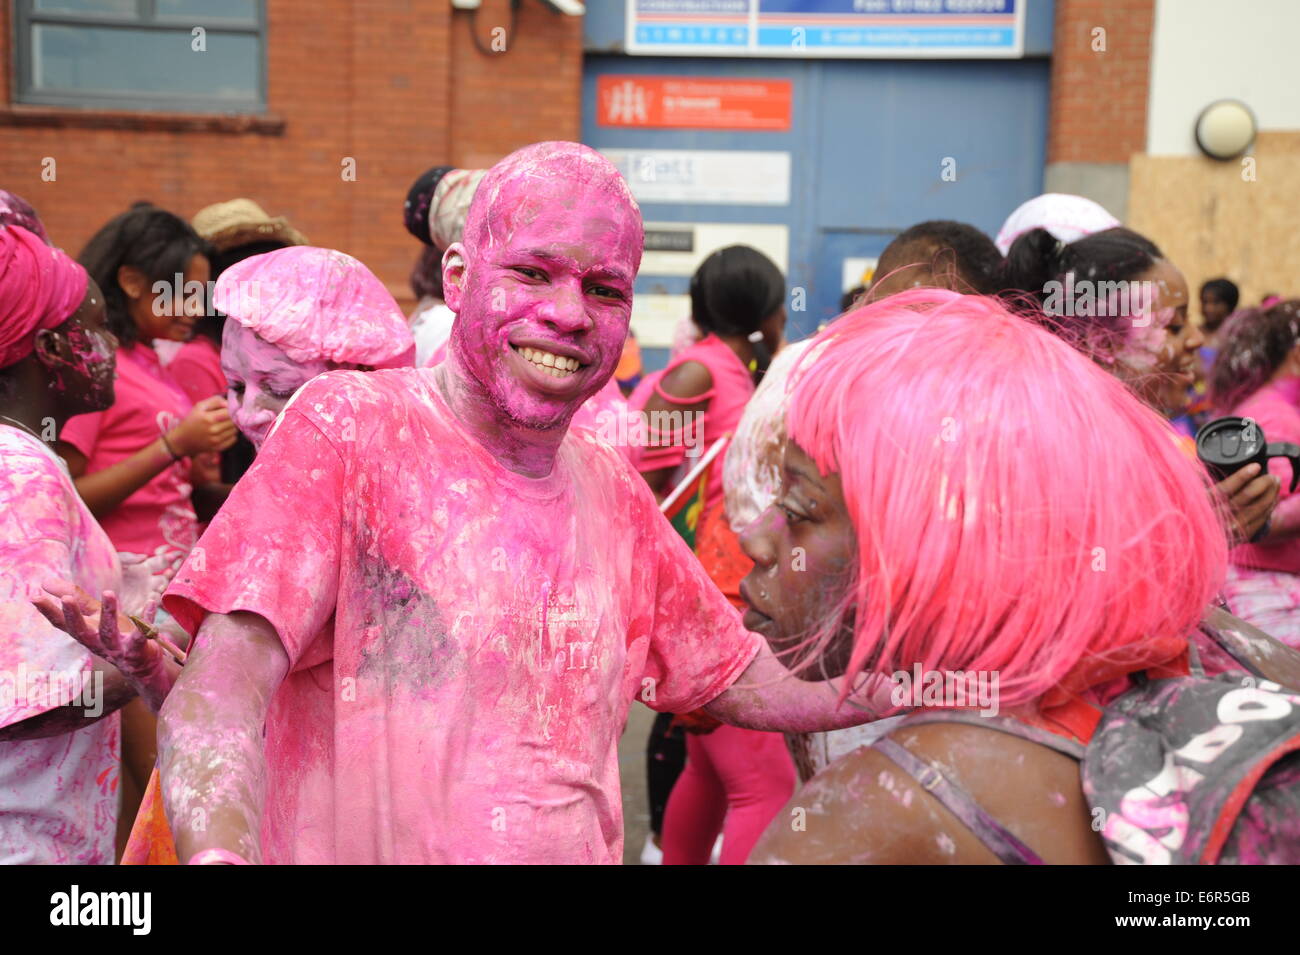 Jeune homme noir à Notting Hill Carnival couvert de peinture rose smiling for the camera Banque D'Images